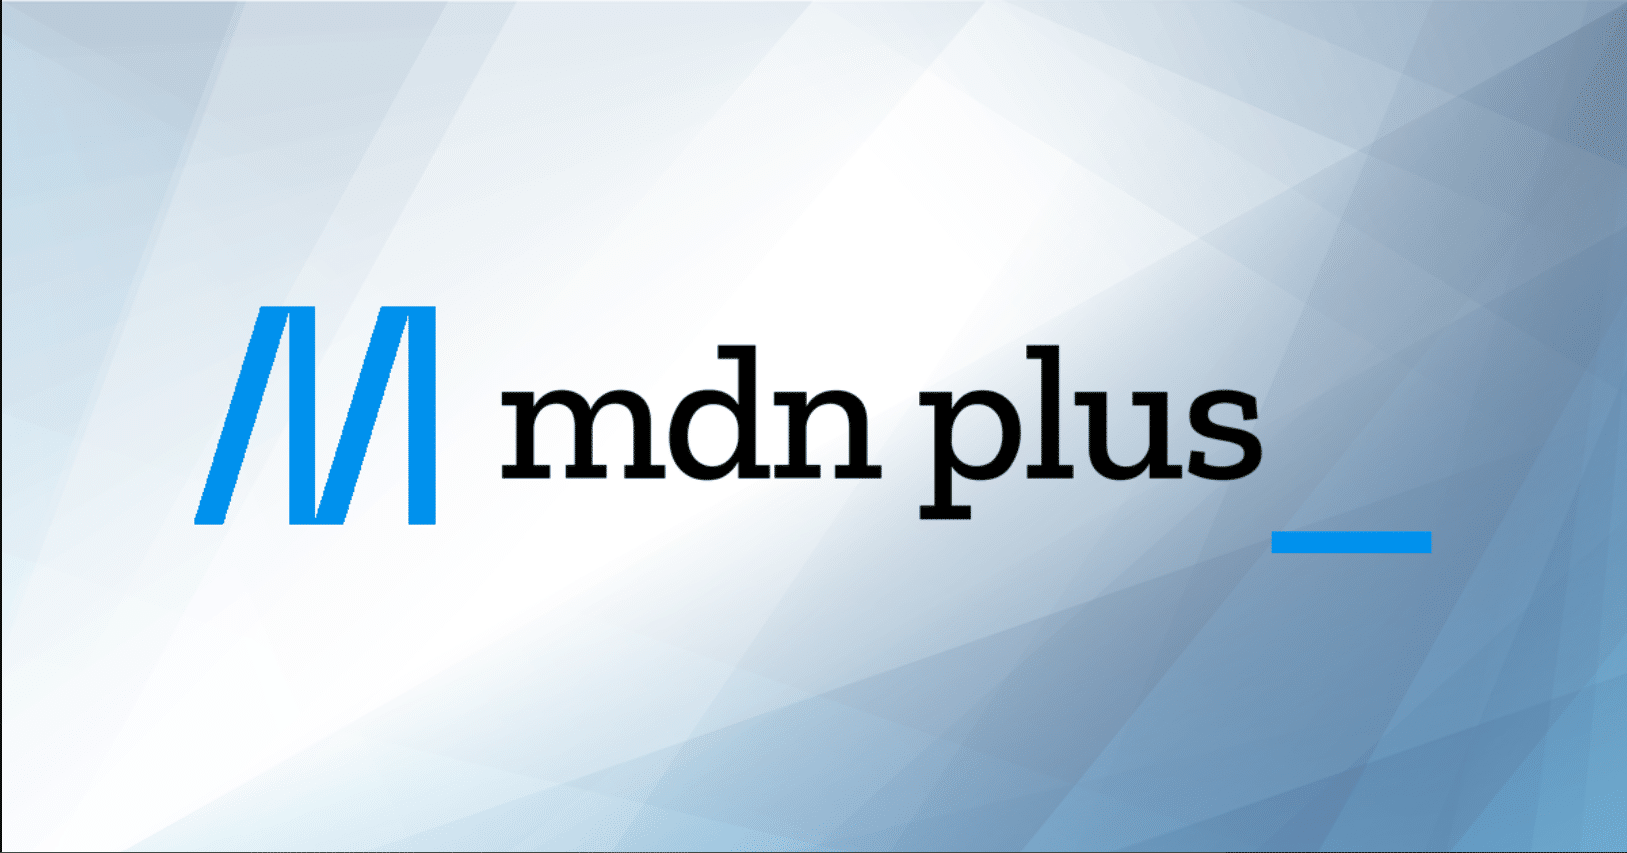 Mozilla realiza mudanças em site para desenvolvedores web e anuncia assinatura 'MDN Plus' com serviços extras